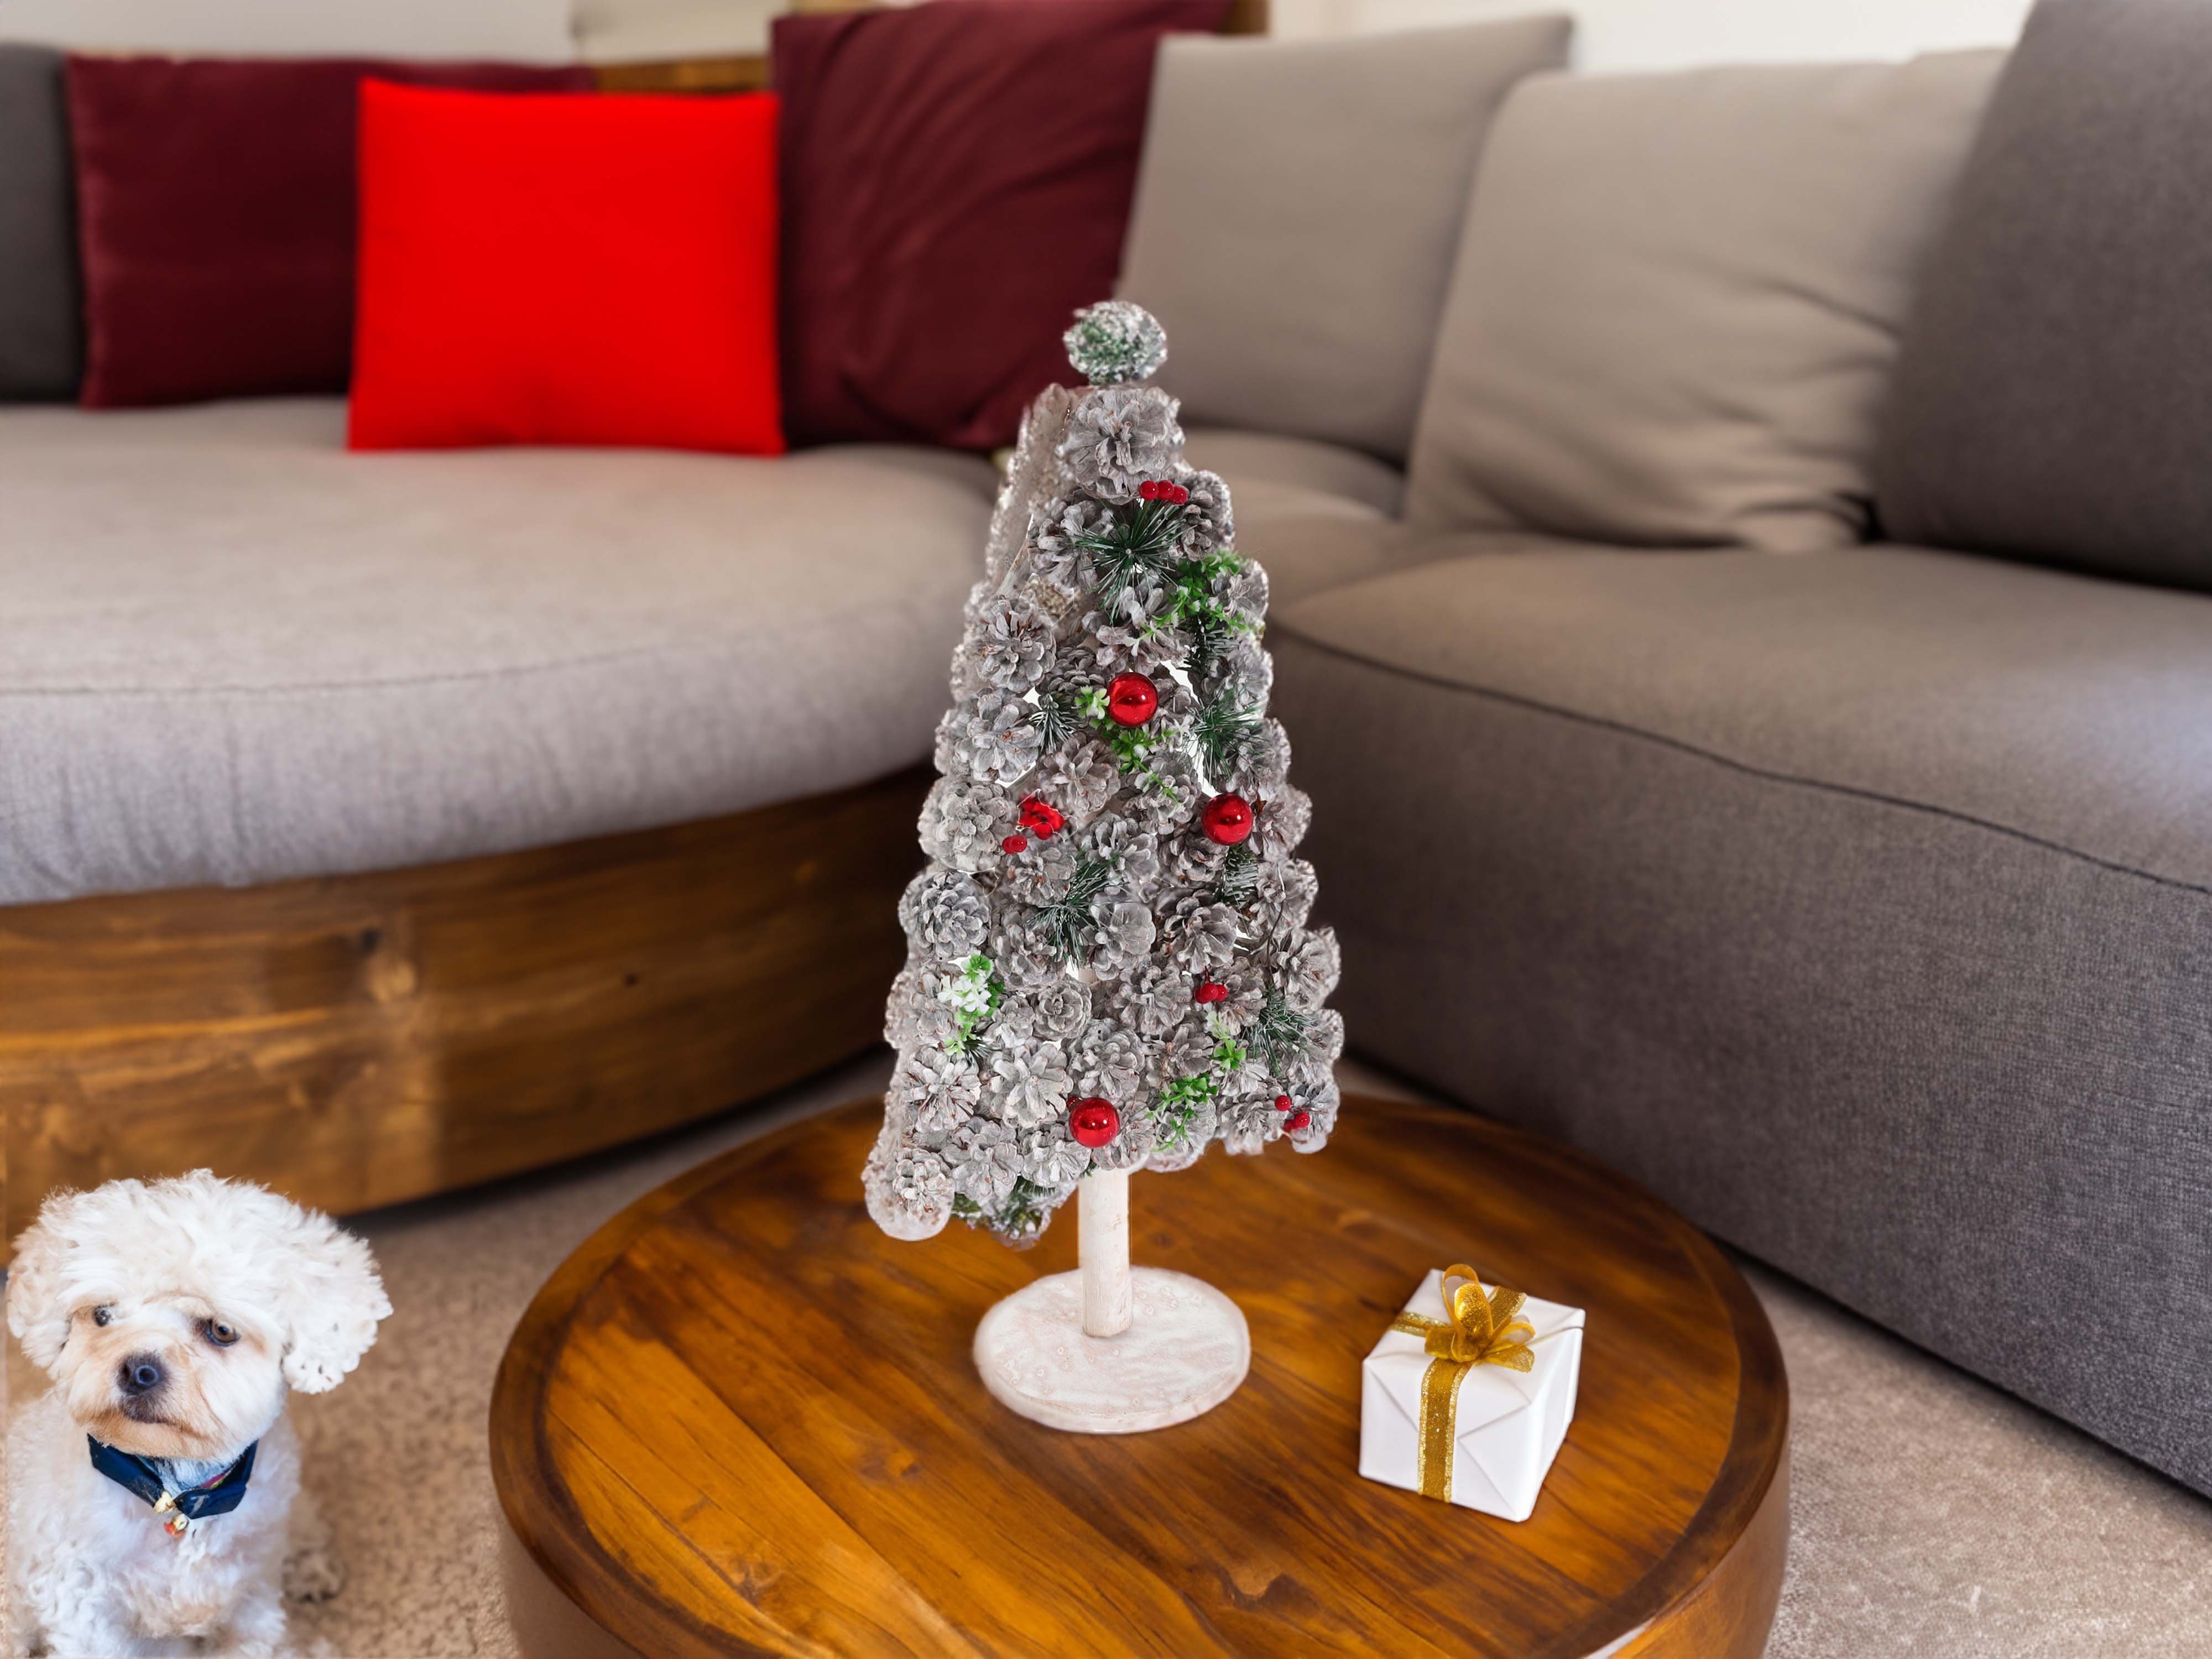 MCW-M17, Weihnachtsbaum Baum, künstlicher Aufwendig Künstlicher MCW geschmückt